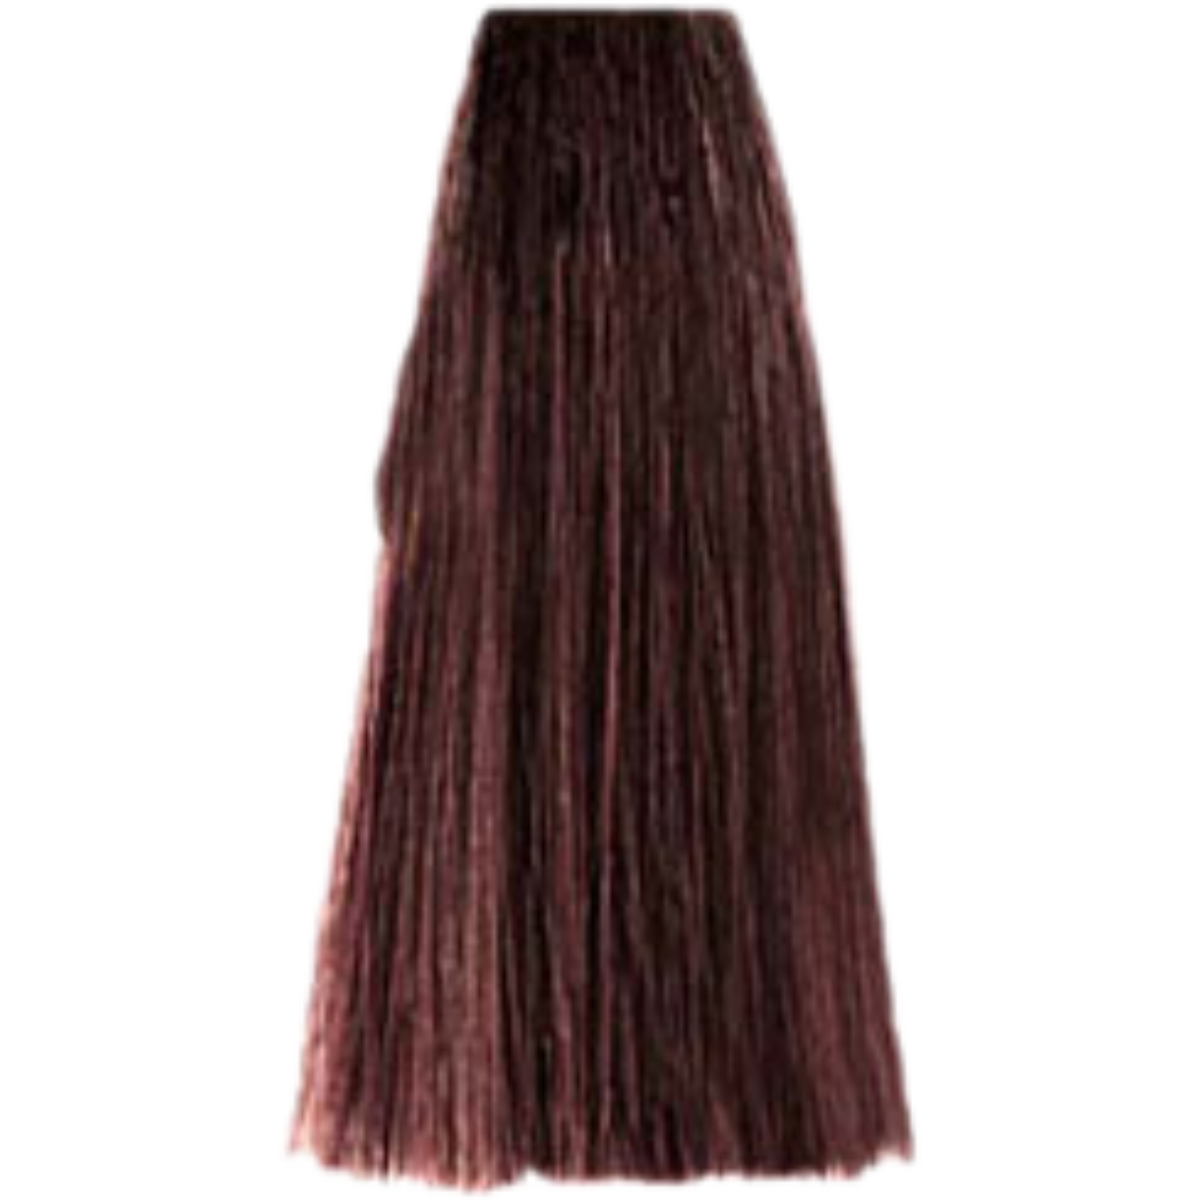 צבע שיער 5.77 LIGHT BROWN INTENSE פארמויטה FarmaVita צבע לשיער 100 גרם